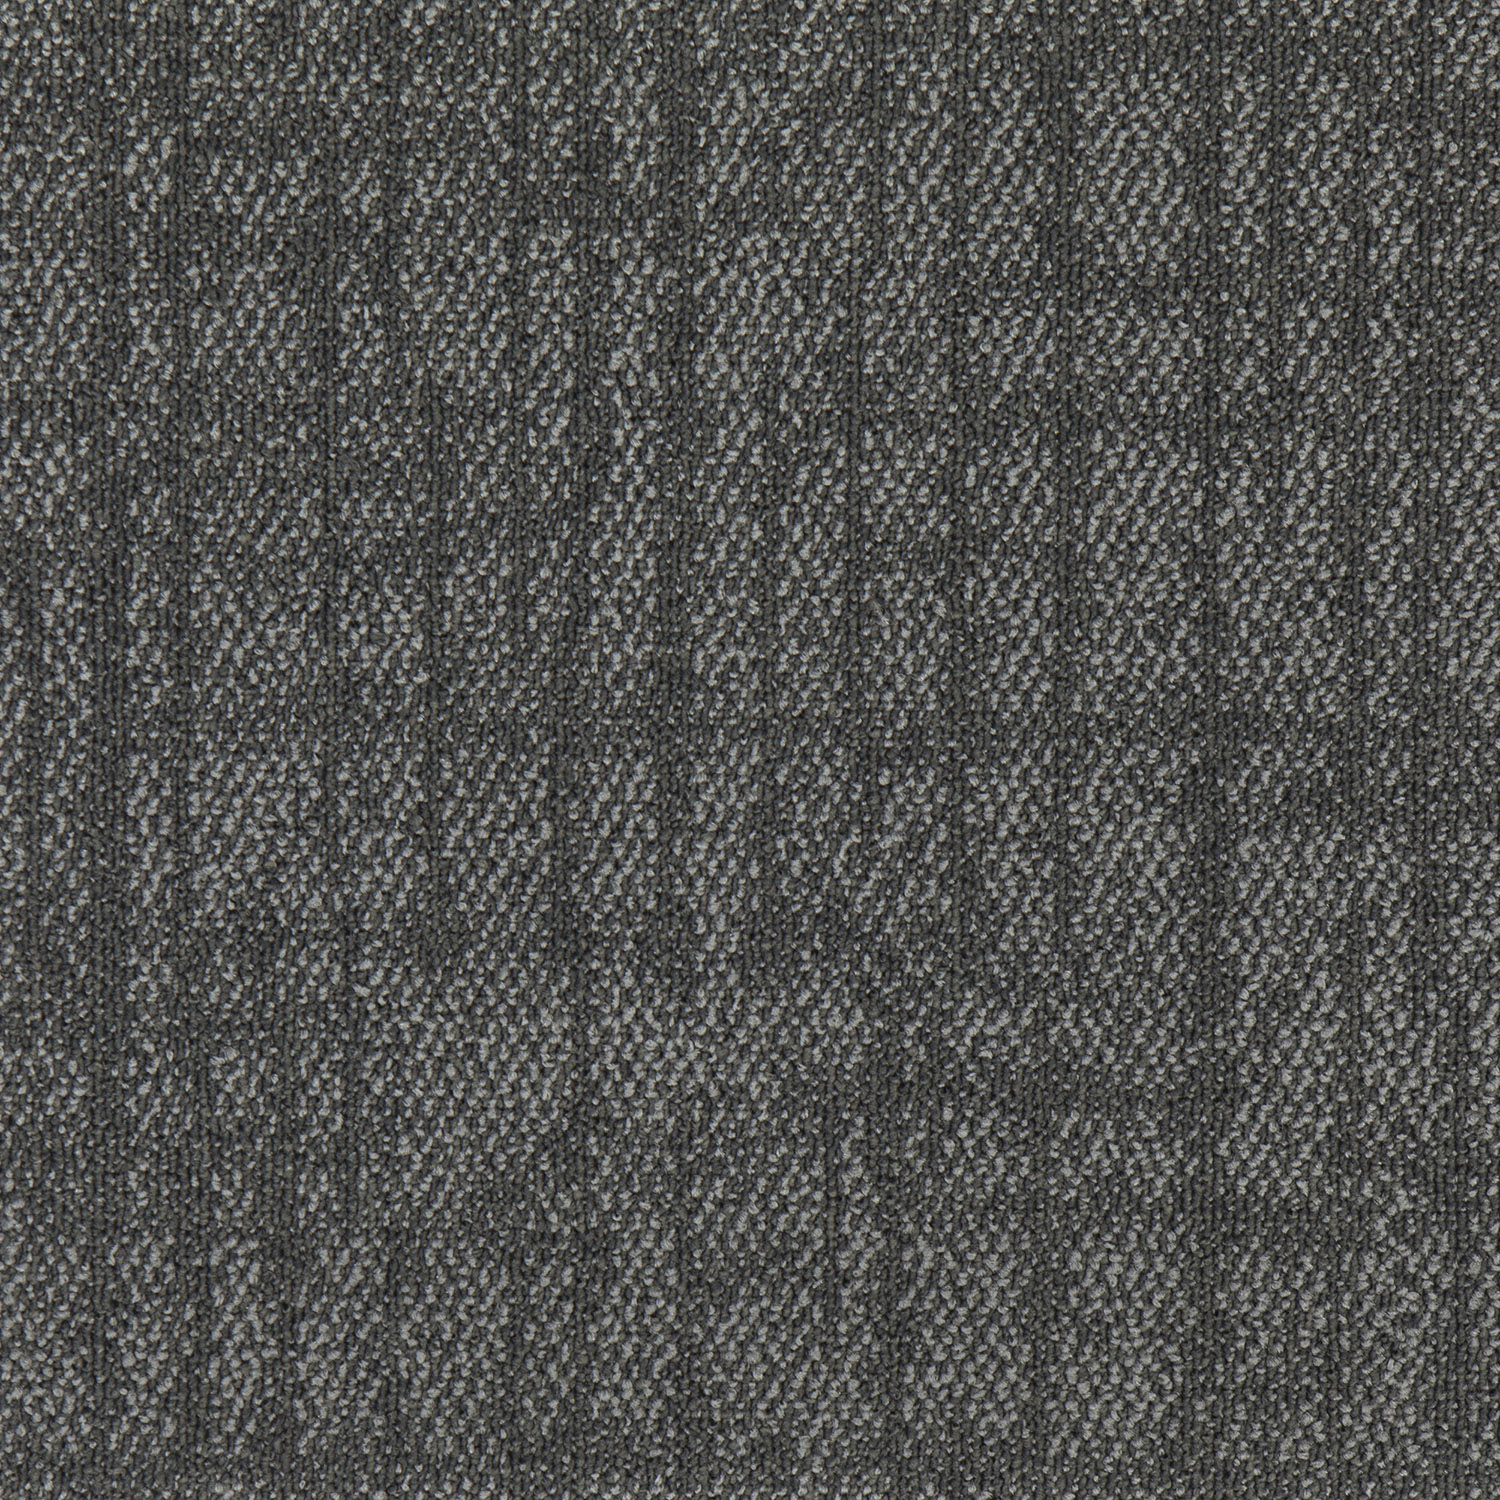 LAGOM226 Nylon Modern Square Carpet Tiles Factory